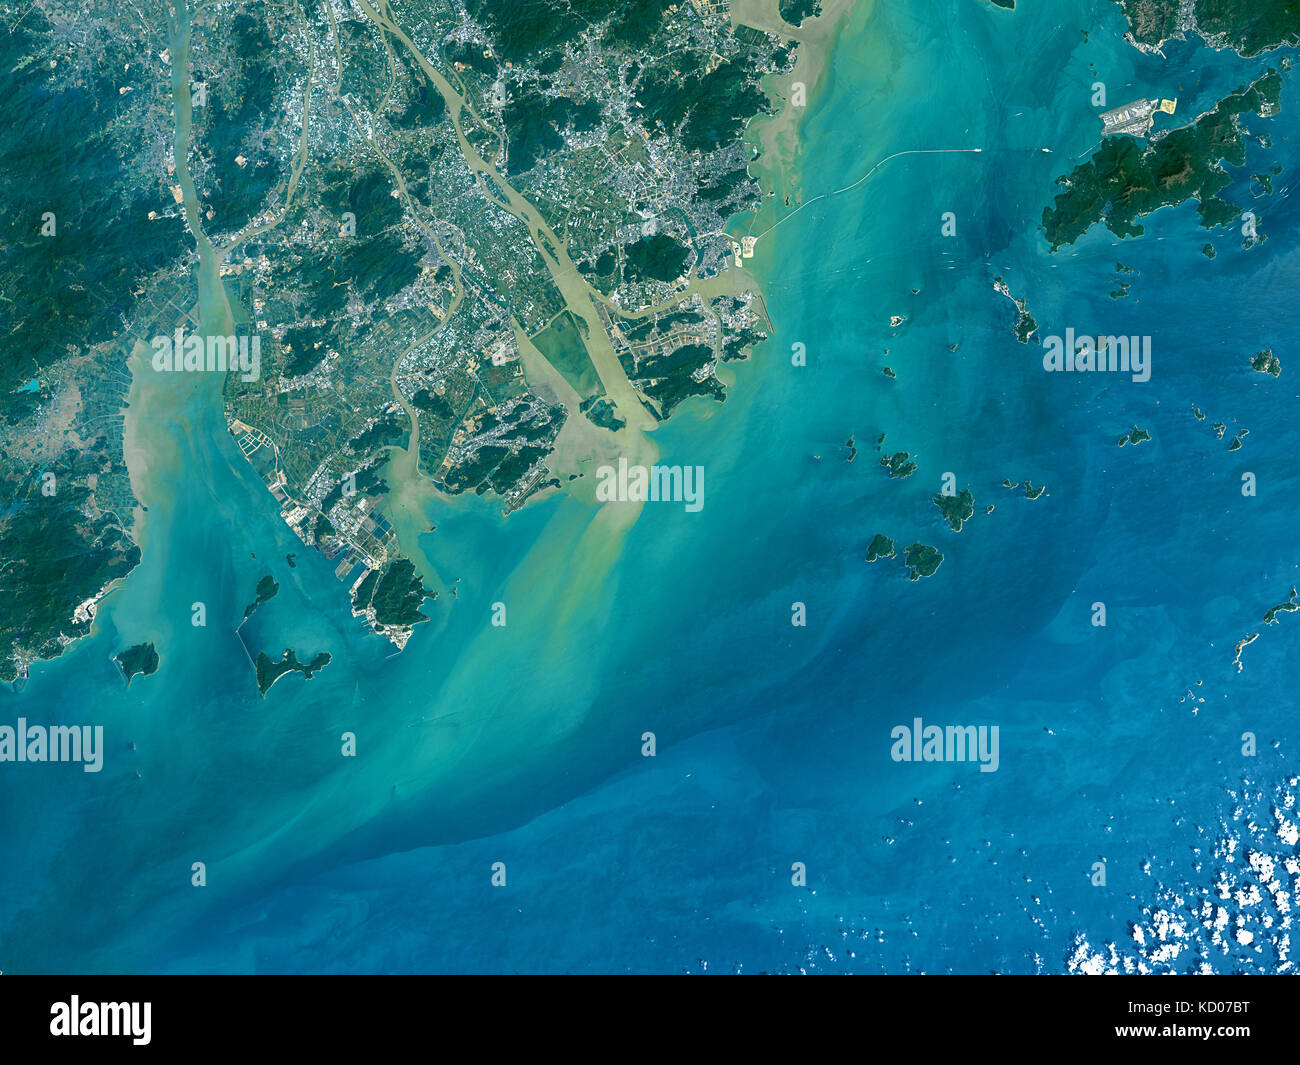 Image satellite de la Hong Kong et le delta de la rivière des Perles, Hong Kong Banque D'Images